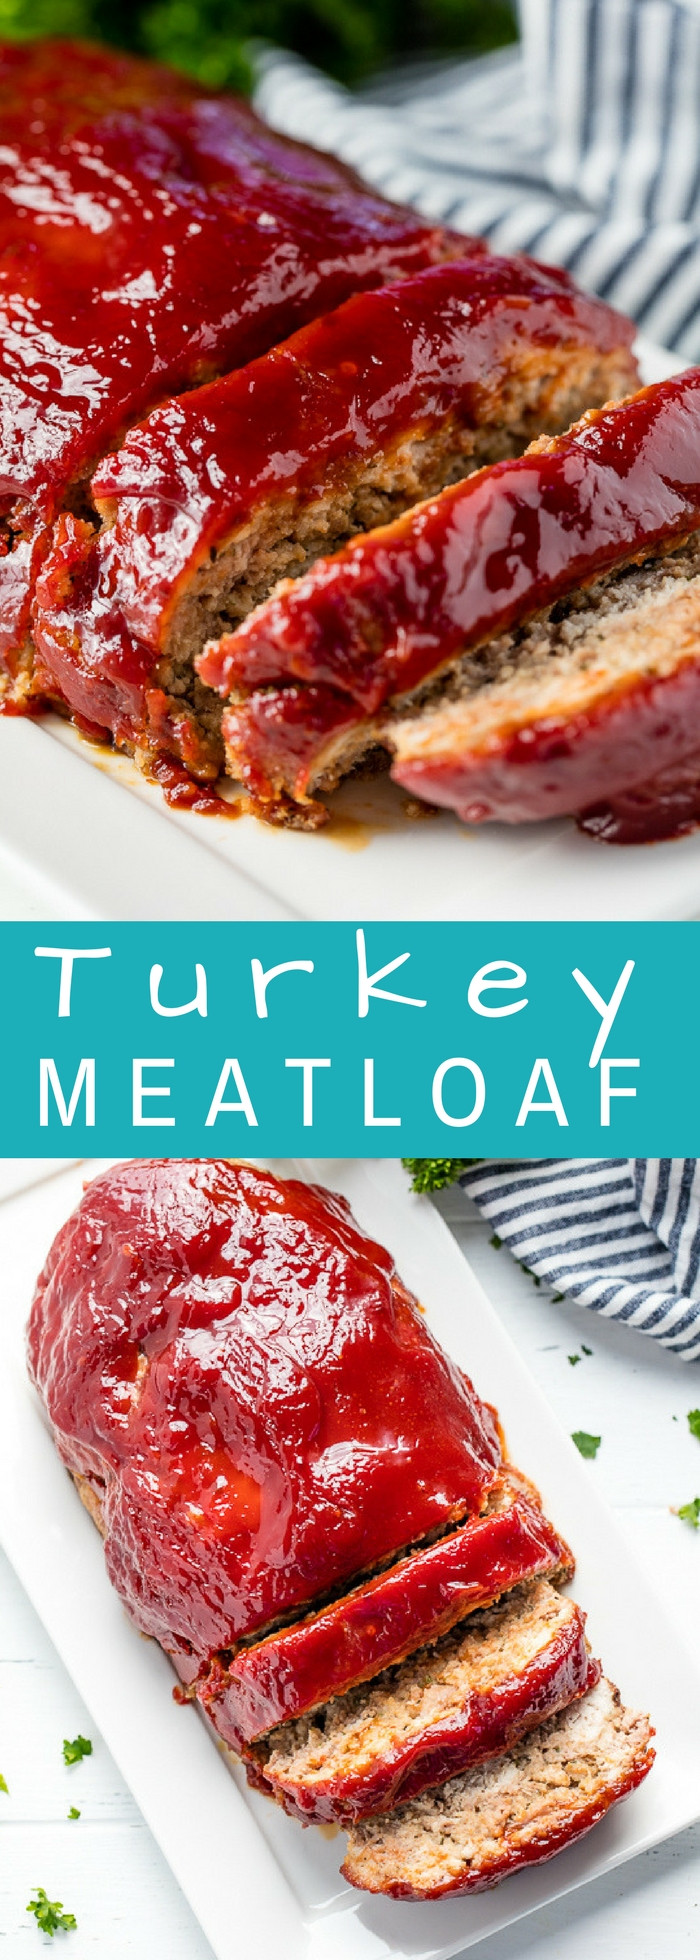 Is Turkey Meatloaf Healthy
 Turkey Meatloaf